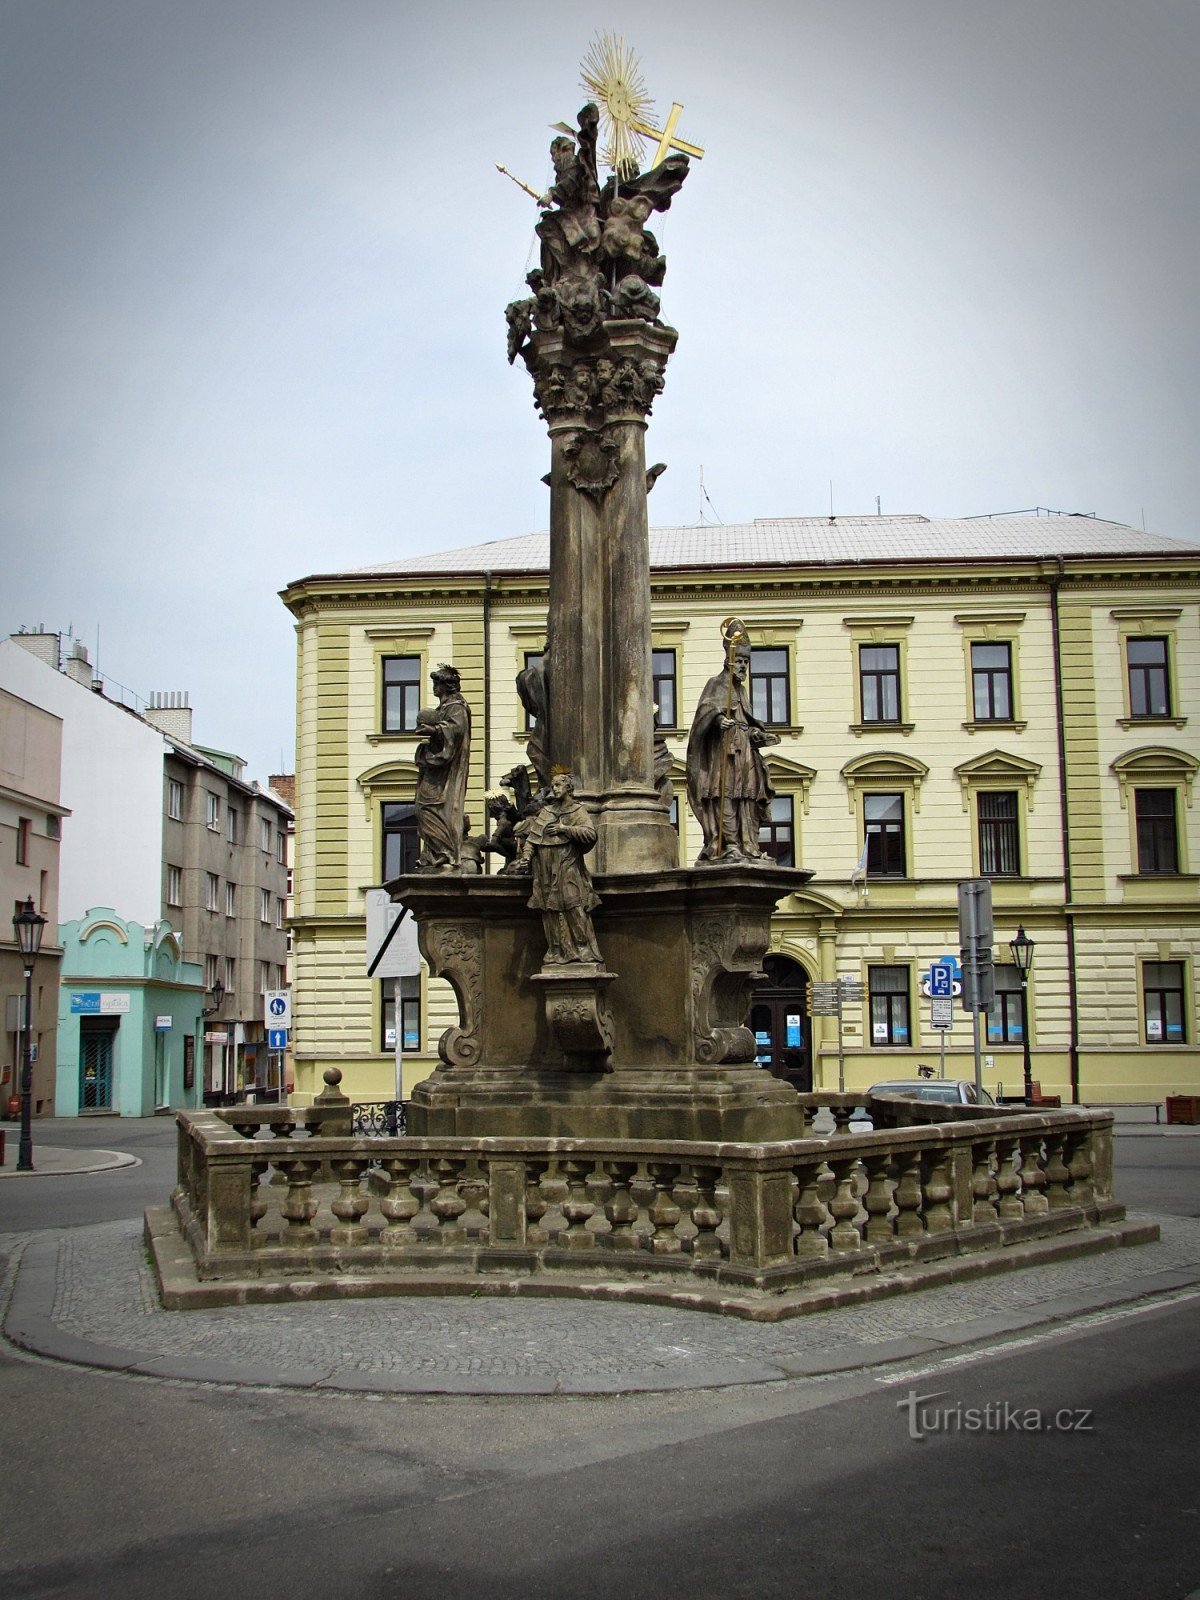 plague column of the Holy Trinity